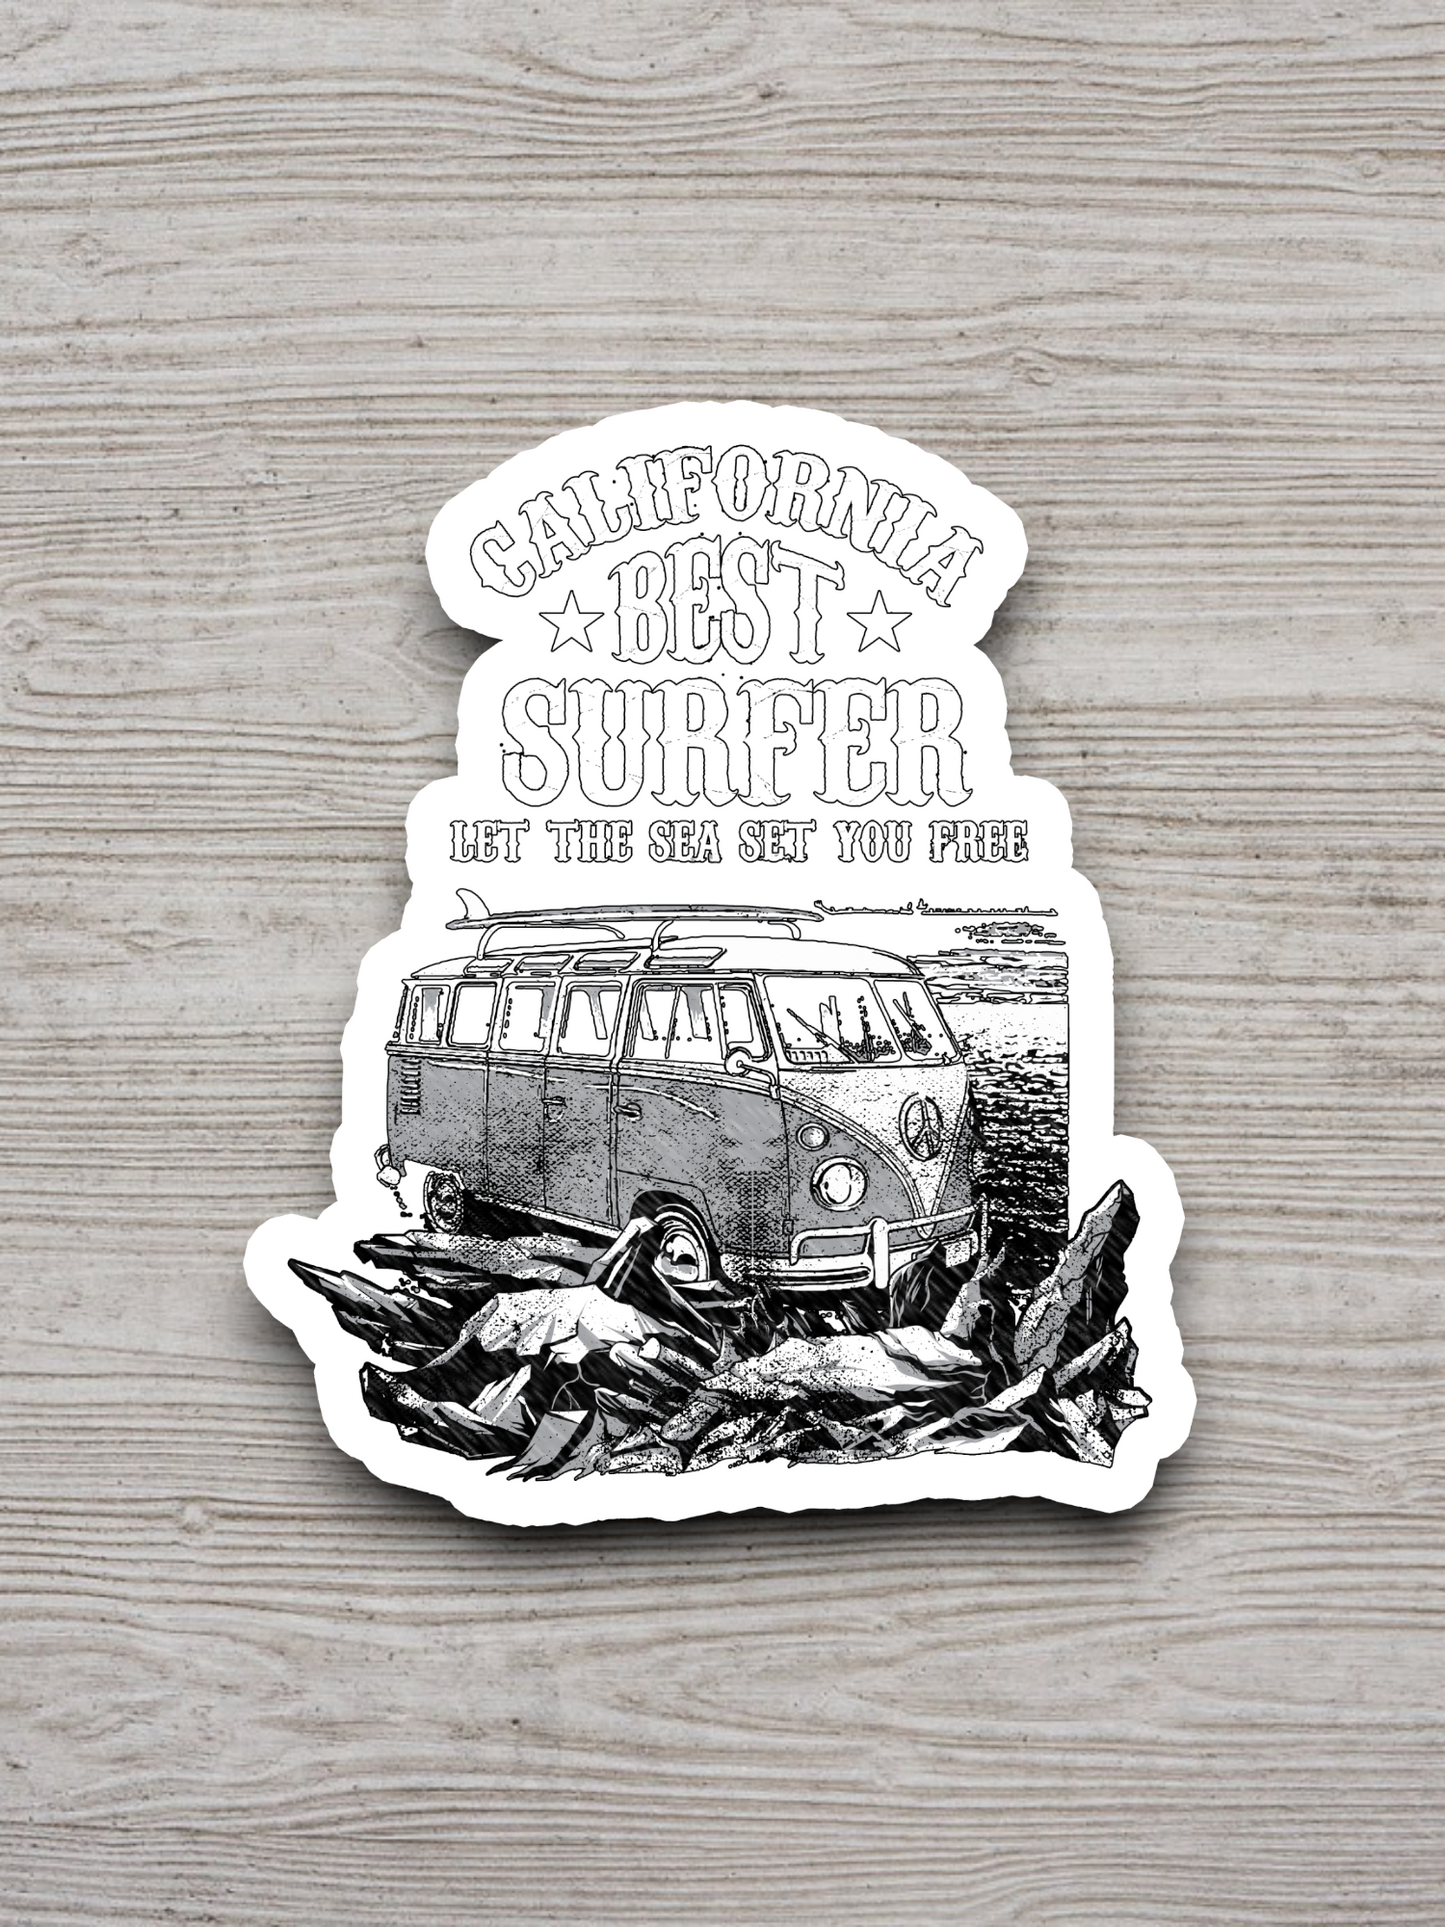 California Best Surfer Sticker